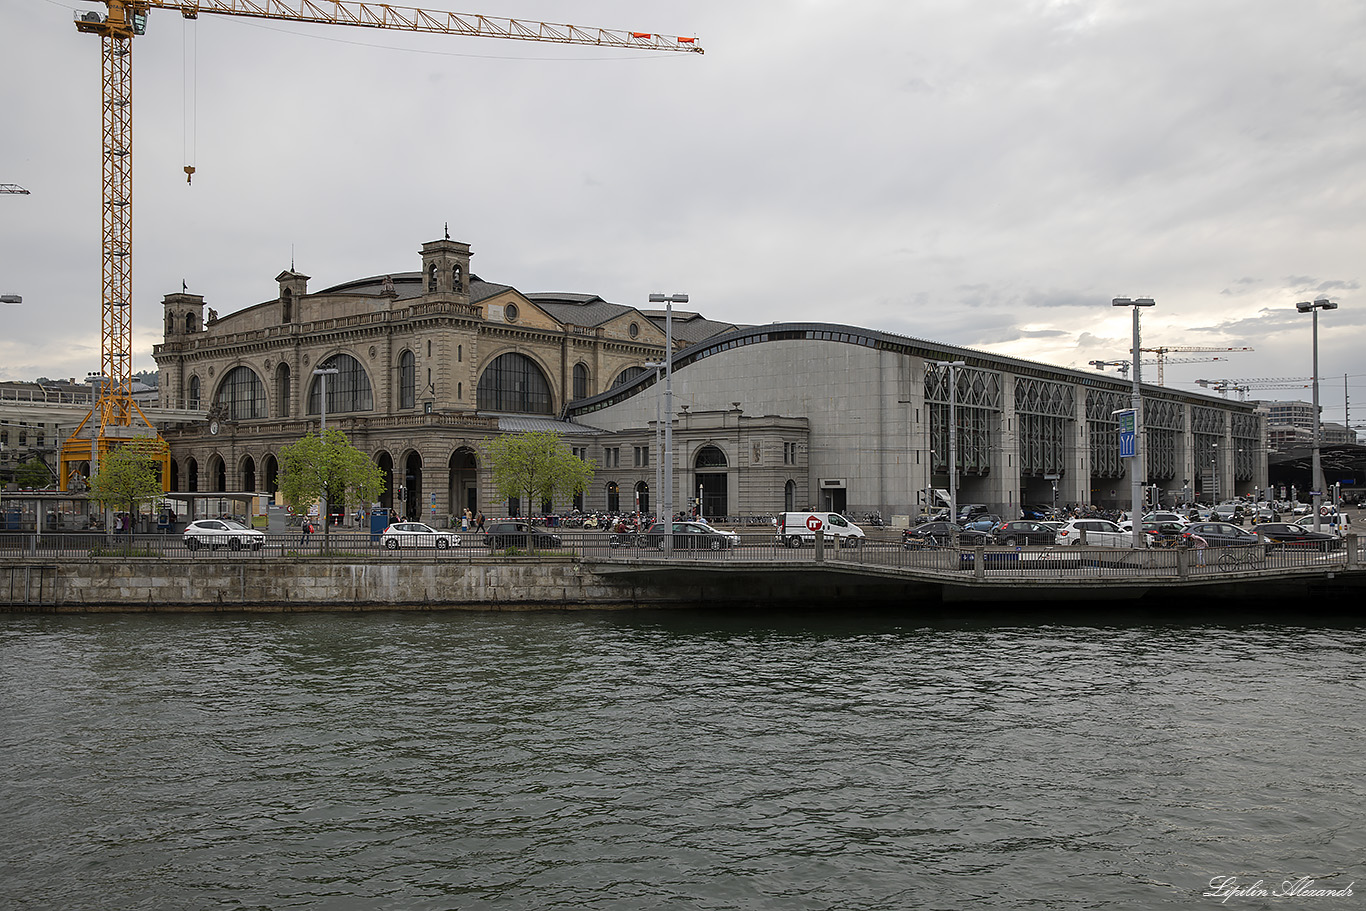 Цюрих (Zürich)  Железнодорожный вокзал Цюриха